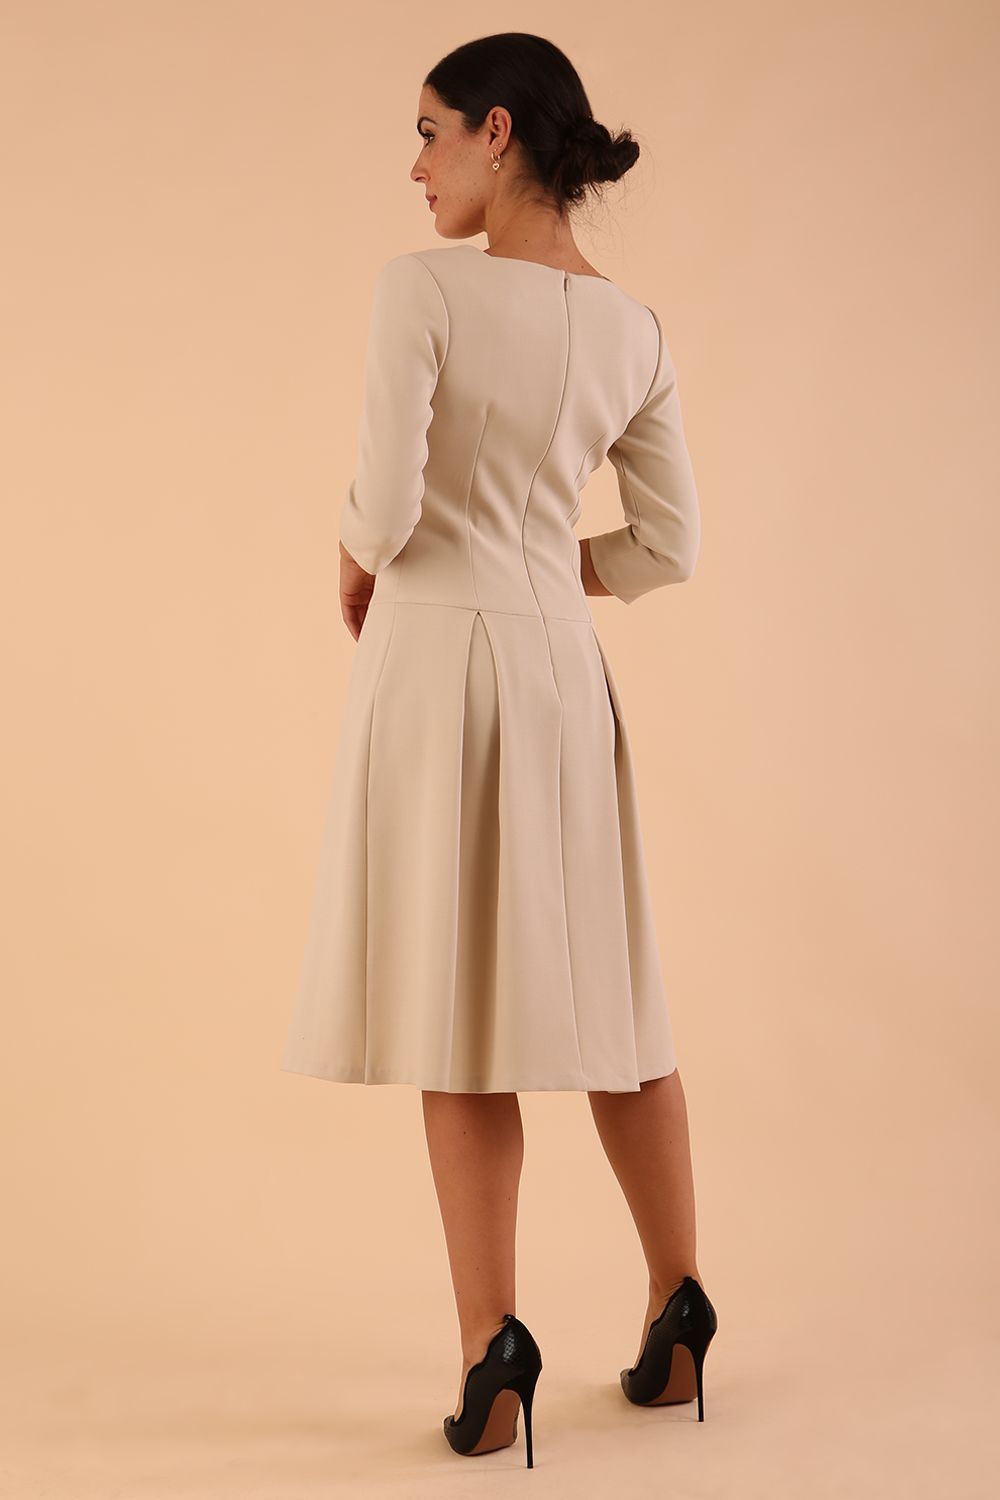 Model wearing diva catwalk Cordelia full skirt dress in cream colour